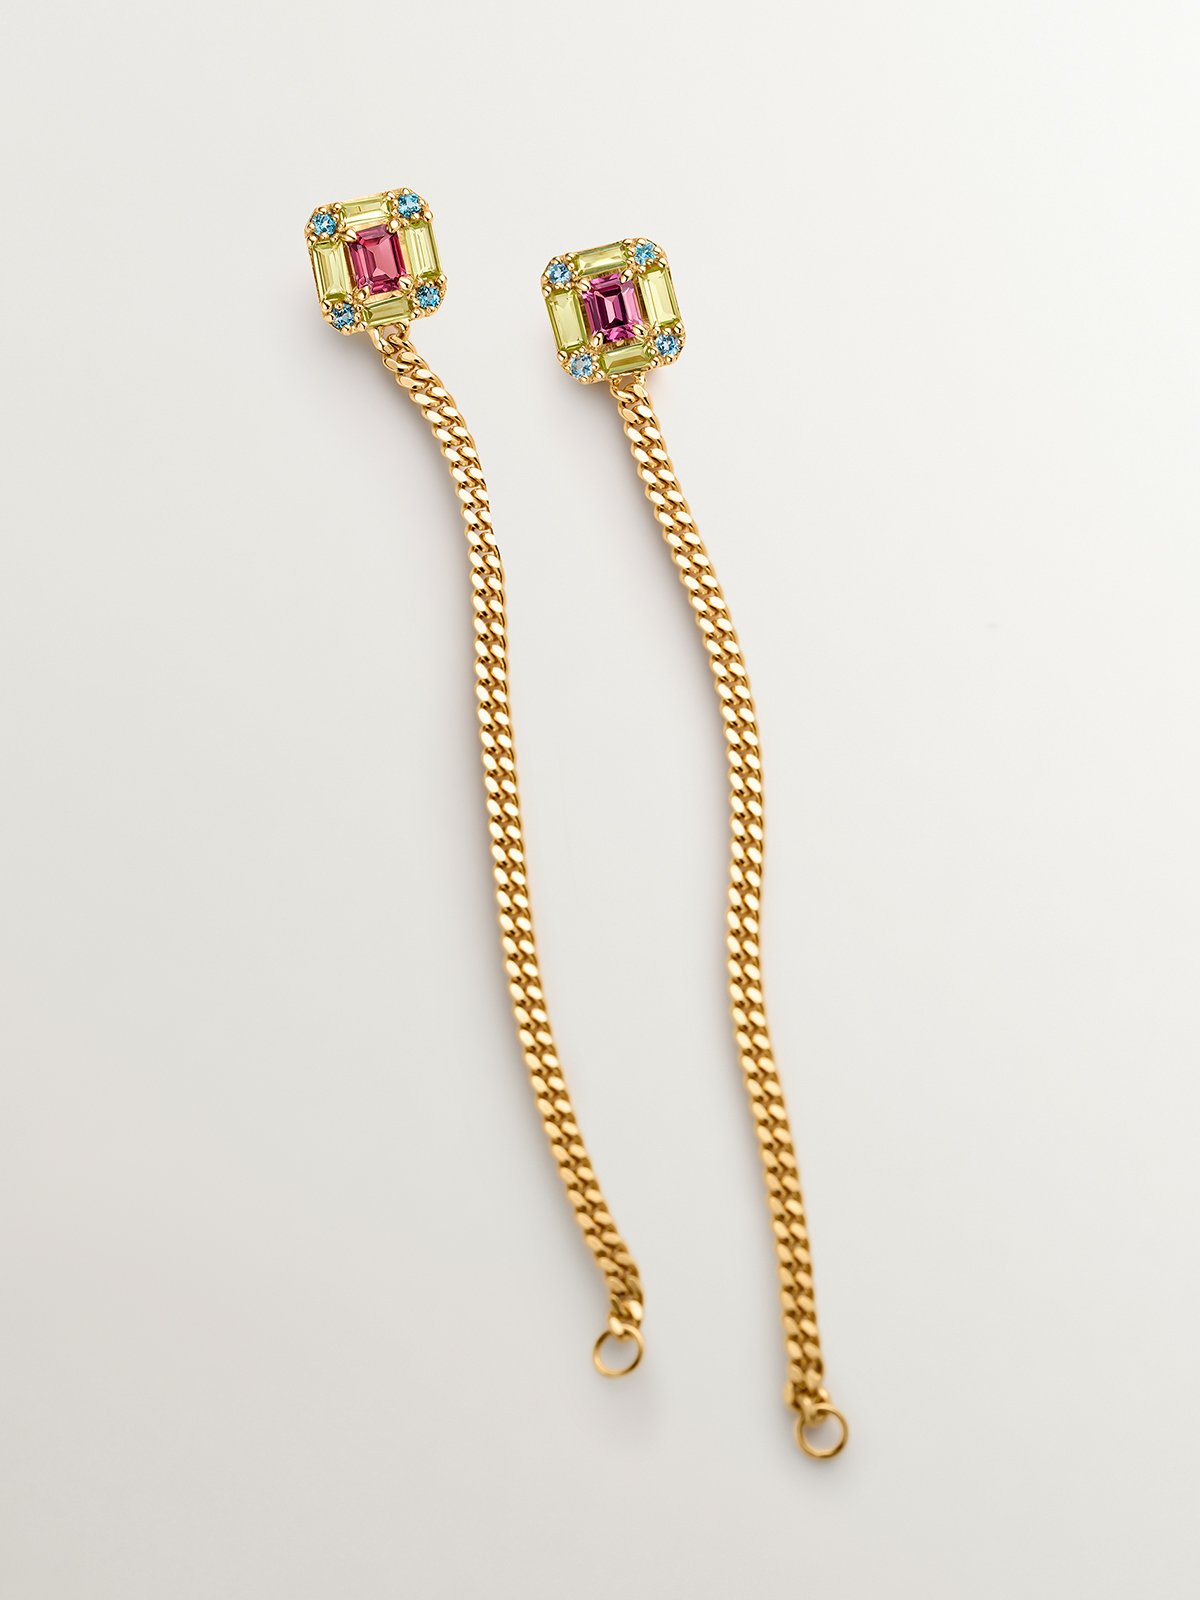 Boucles d'oreilles longues en chaîne d'argent 925 plaqué or jaune 18K avec péridots, topazes et rhodolites